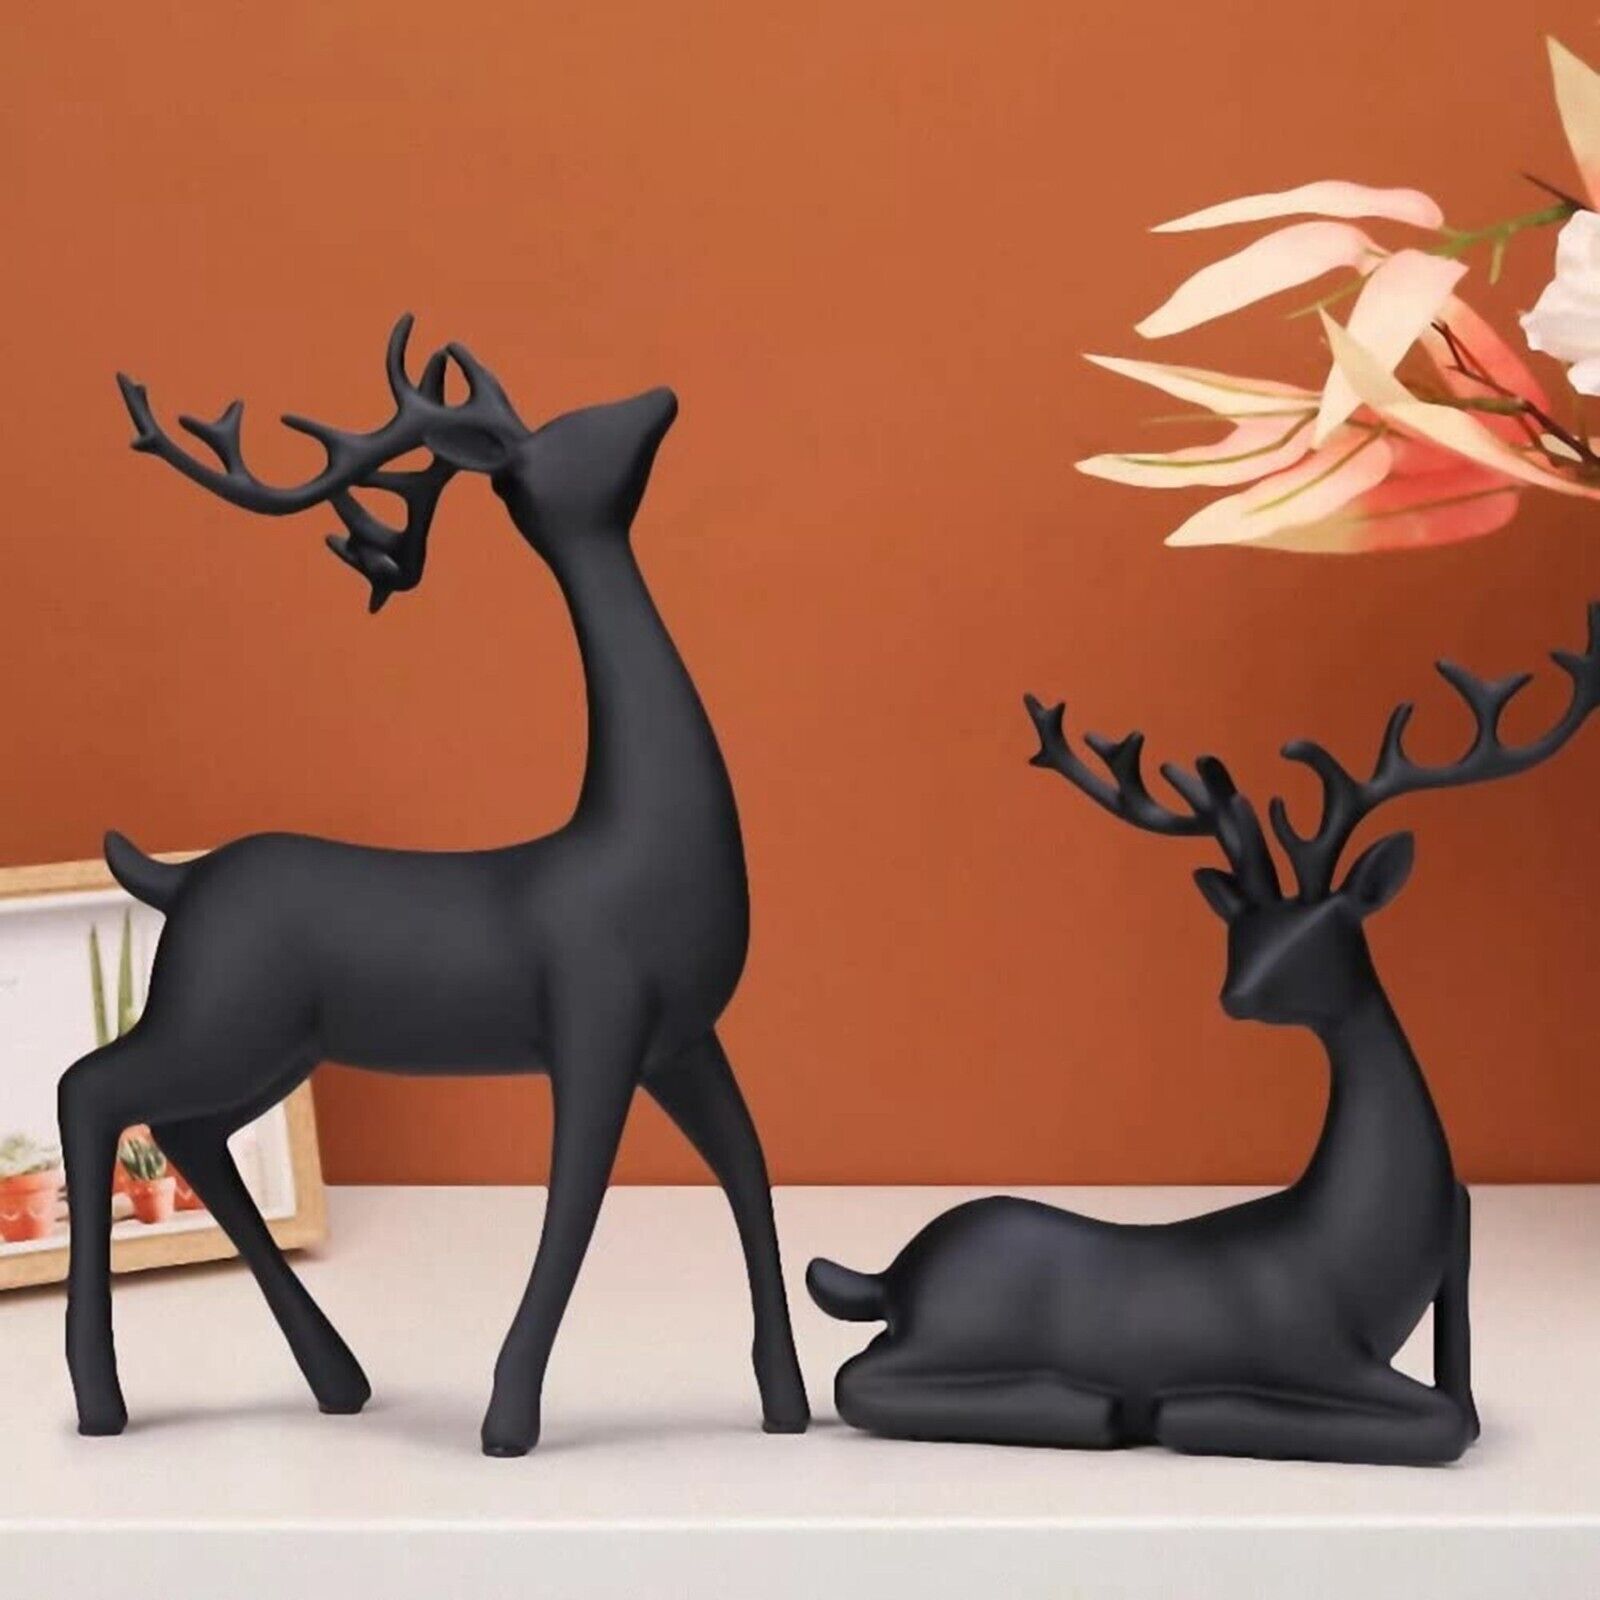 2 Pack Resin Christmas Reindeer Figurines Deer Statues Deer Sculpture Ornaments